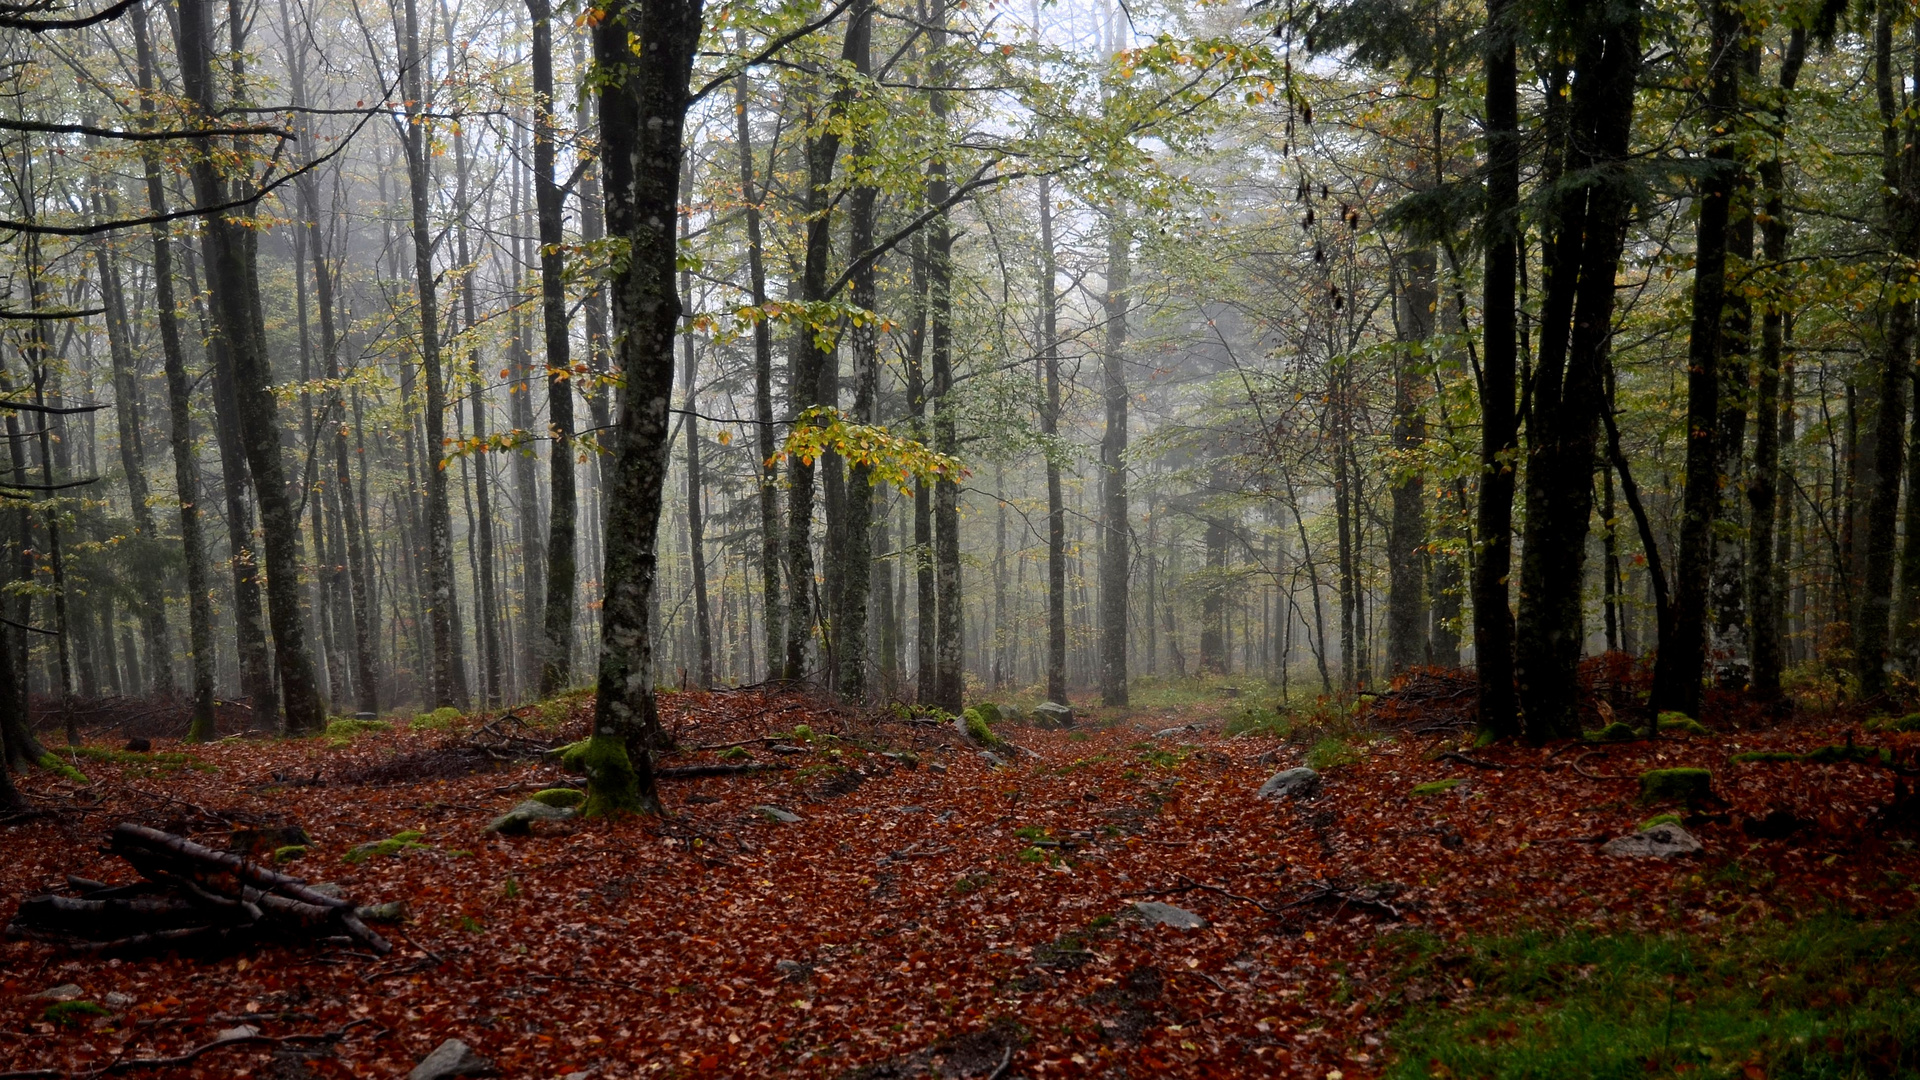 Herbstwald in den Vogesen